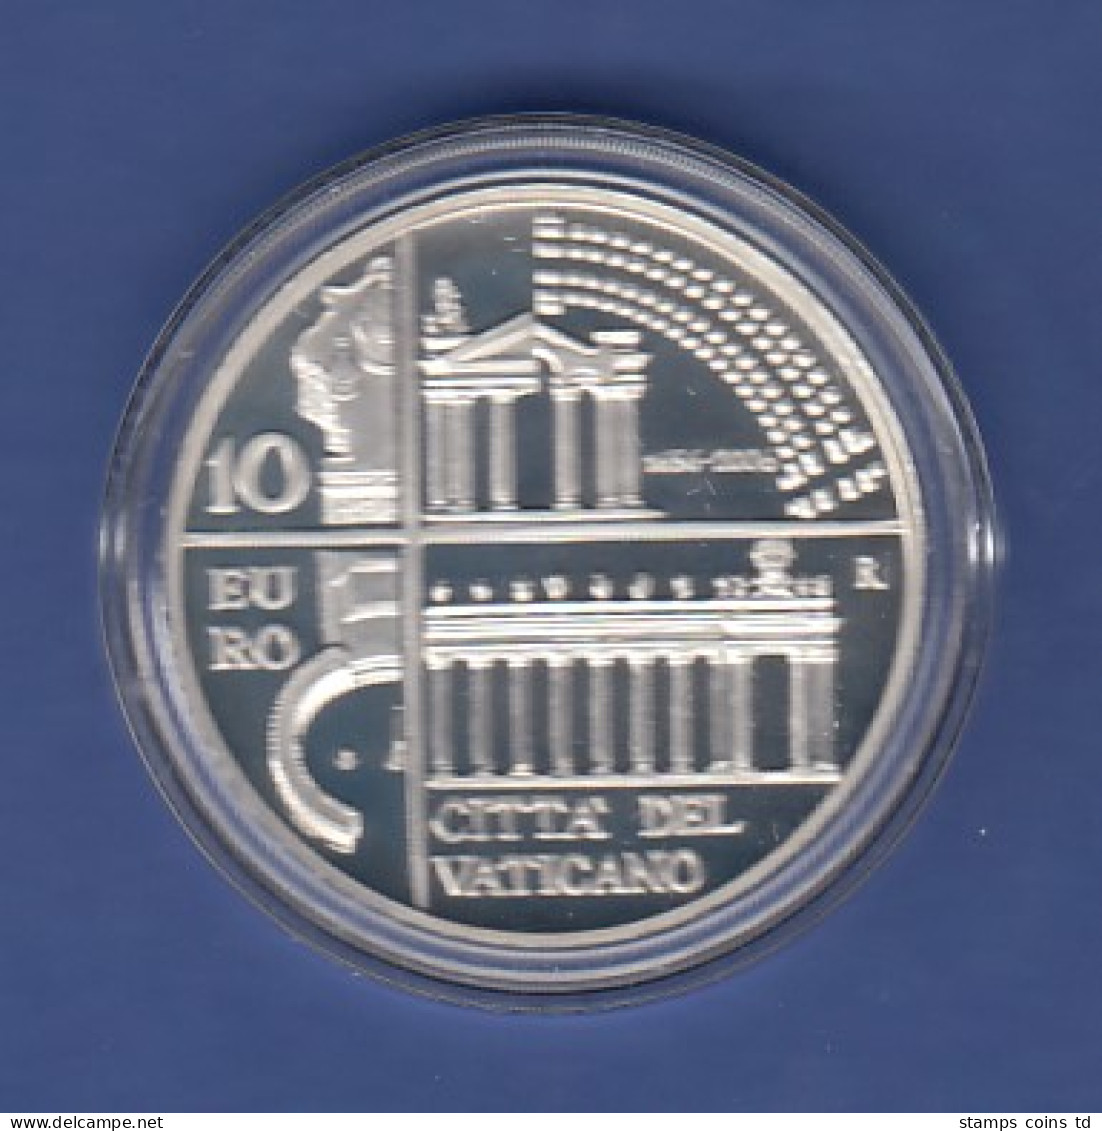 Vatikan 10 Euro Silber-Gedenkmünze 2006 Bernini Collonaden Petersdom OVP - Vatican